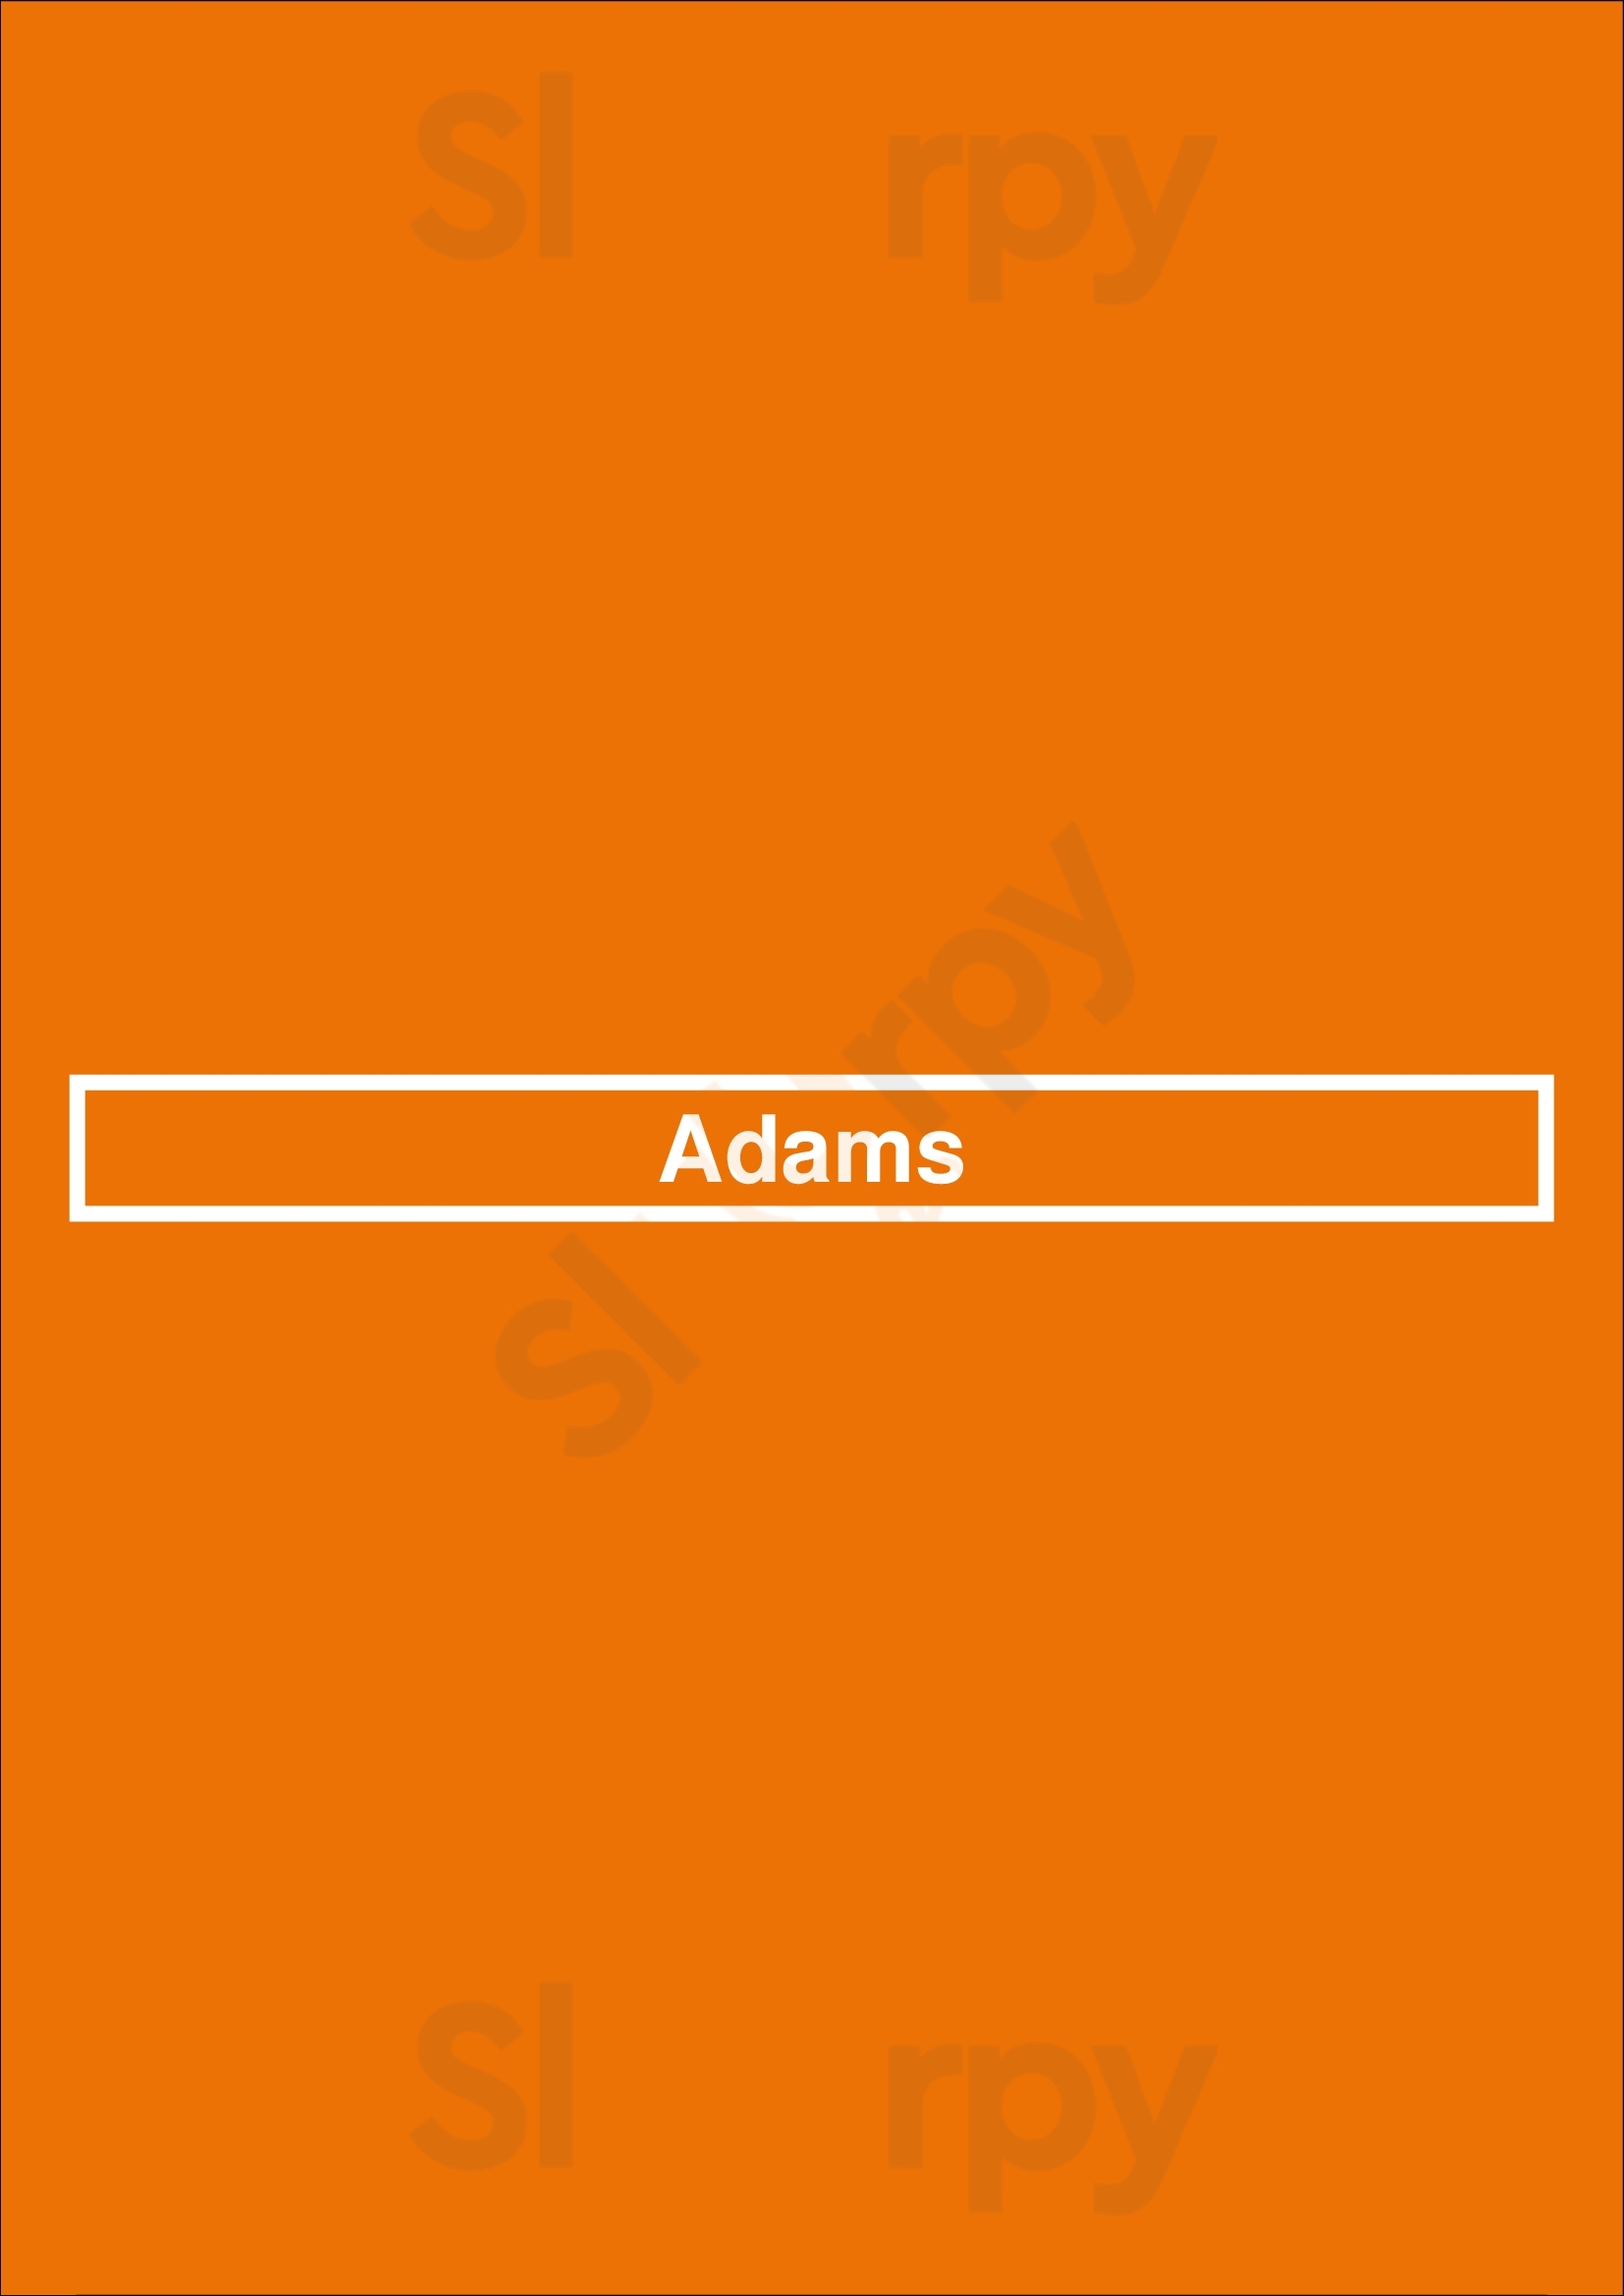 Adams Leeds Menu - 1